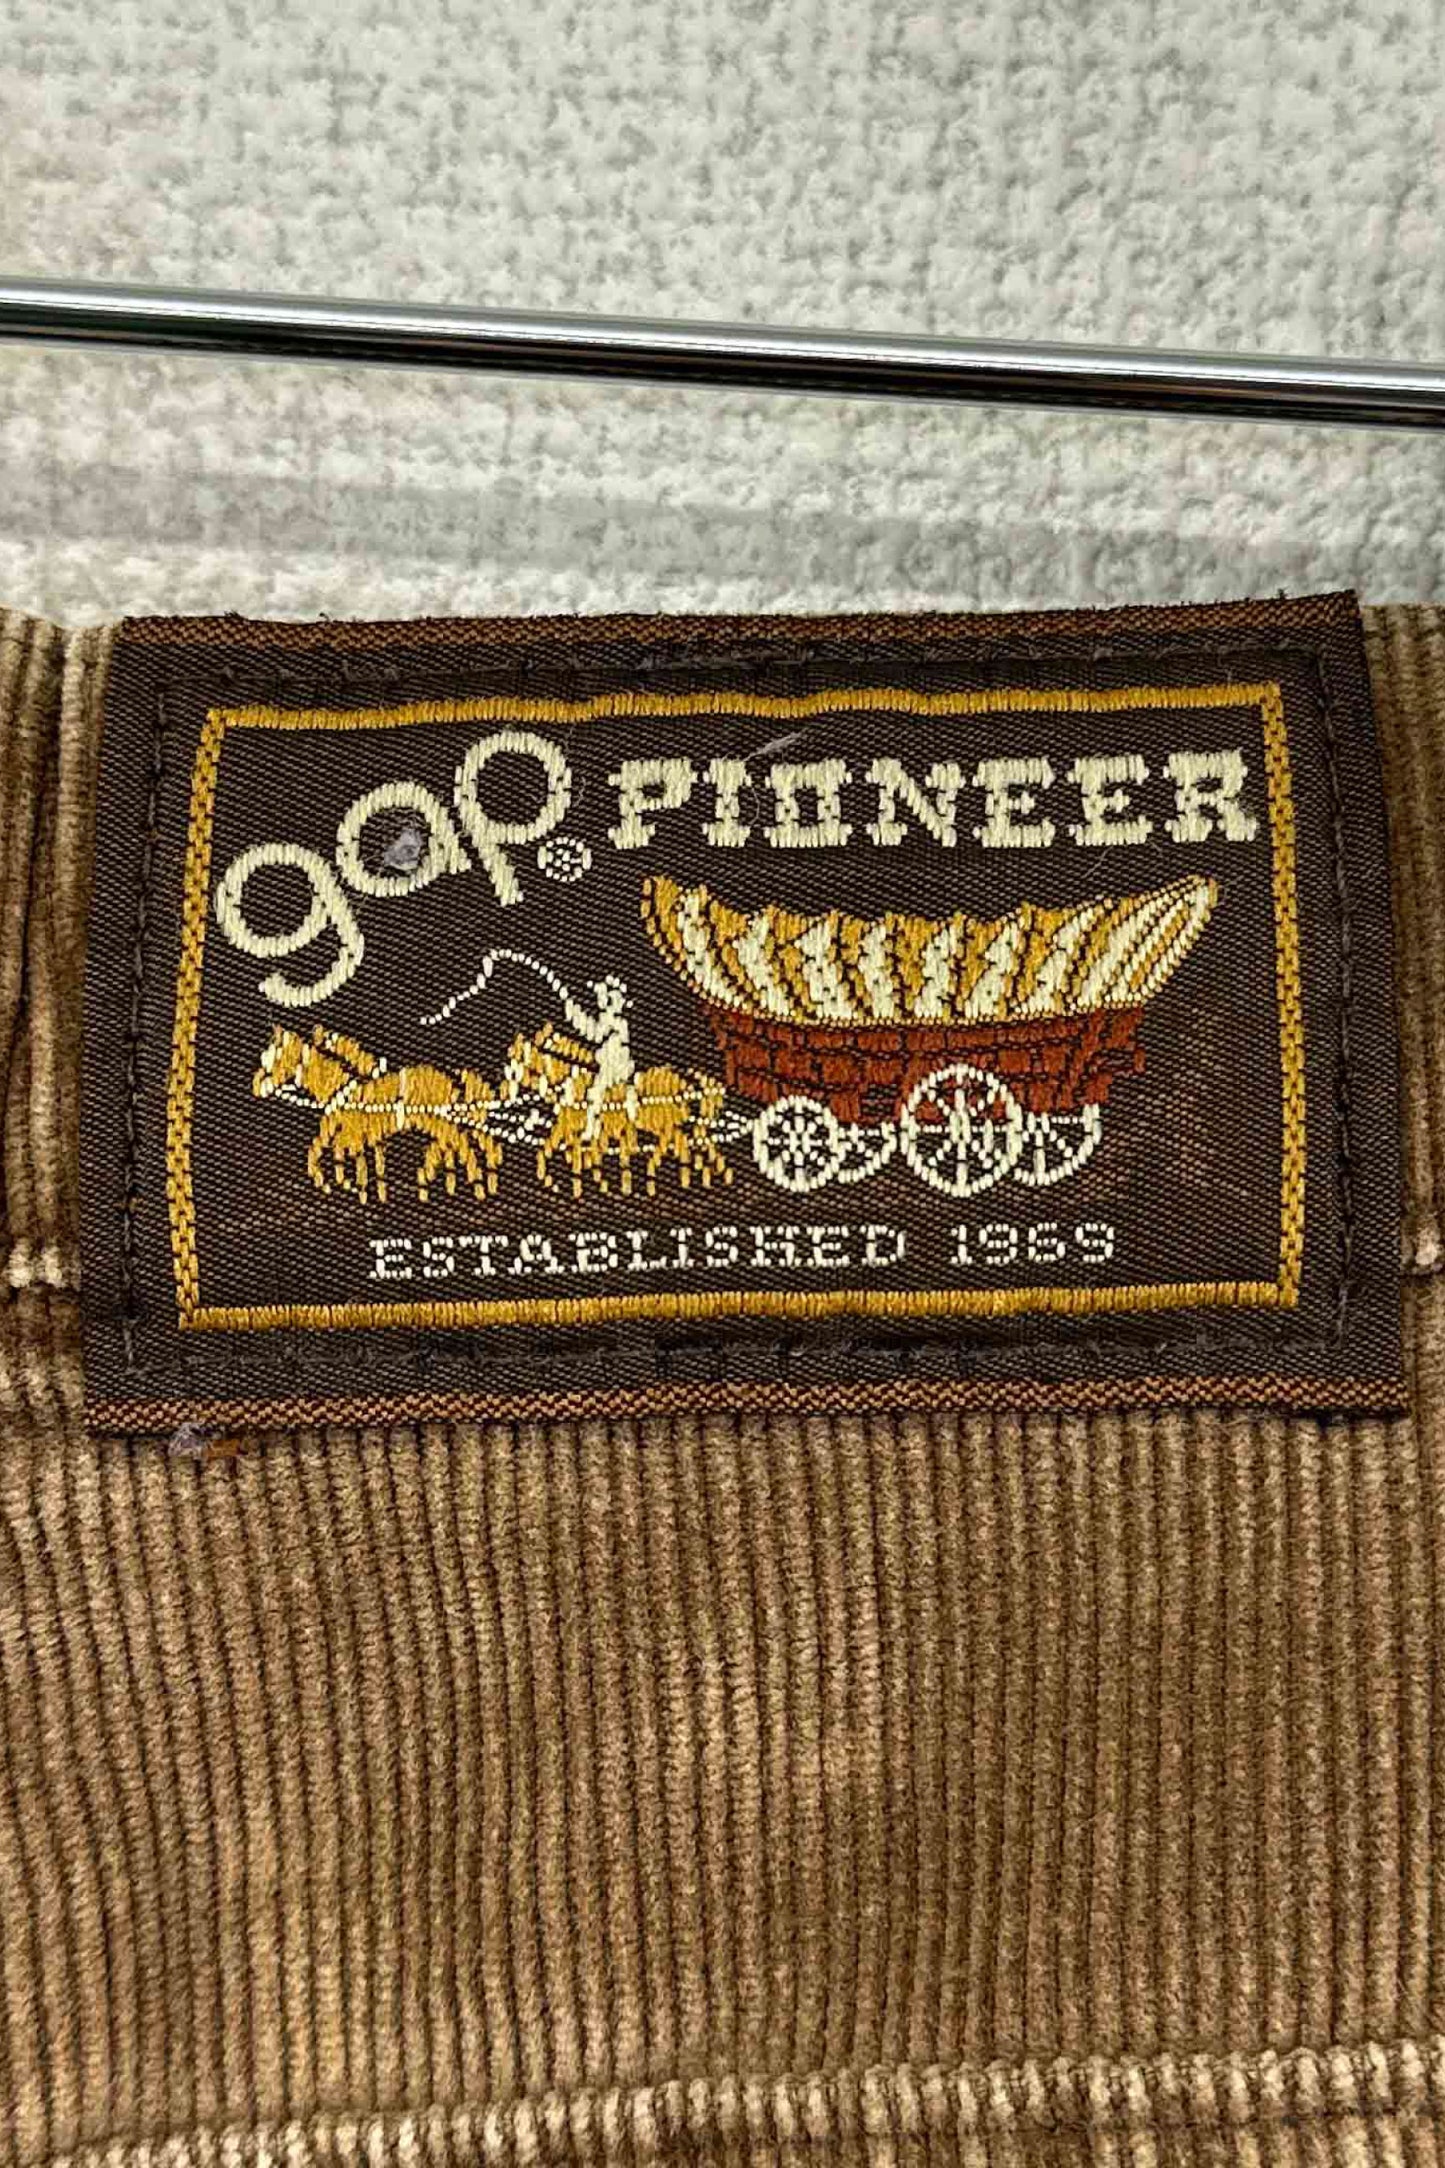 80's gap × pioneer brown coduroy pants